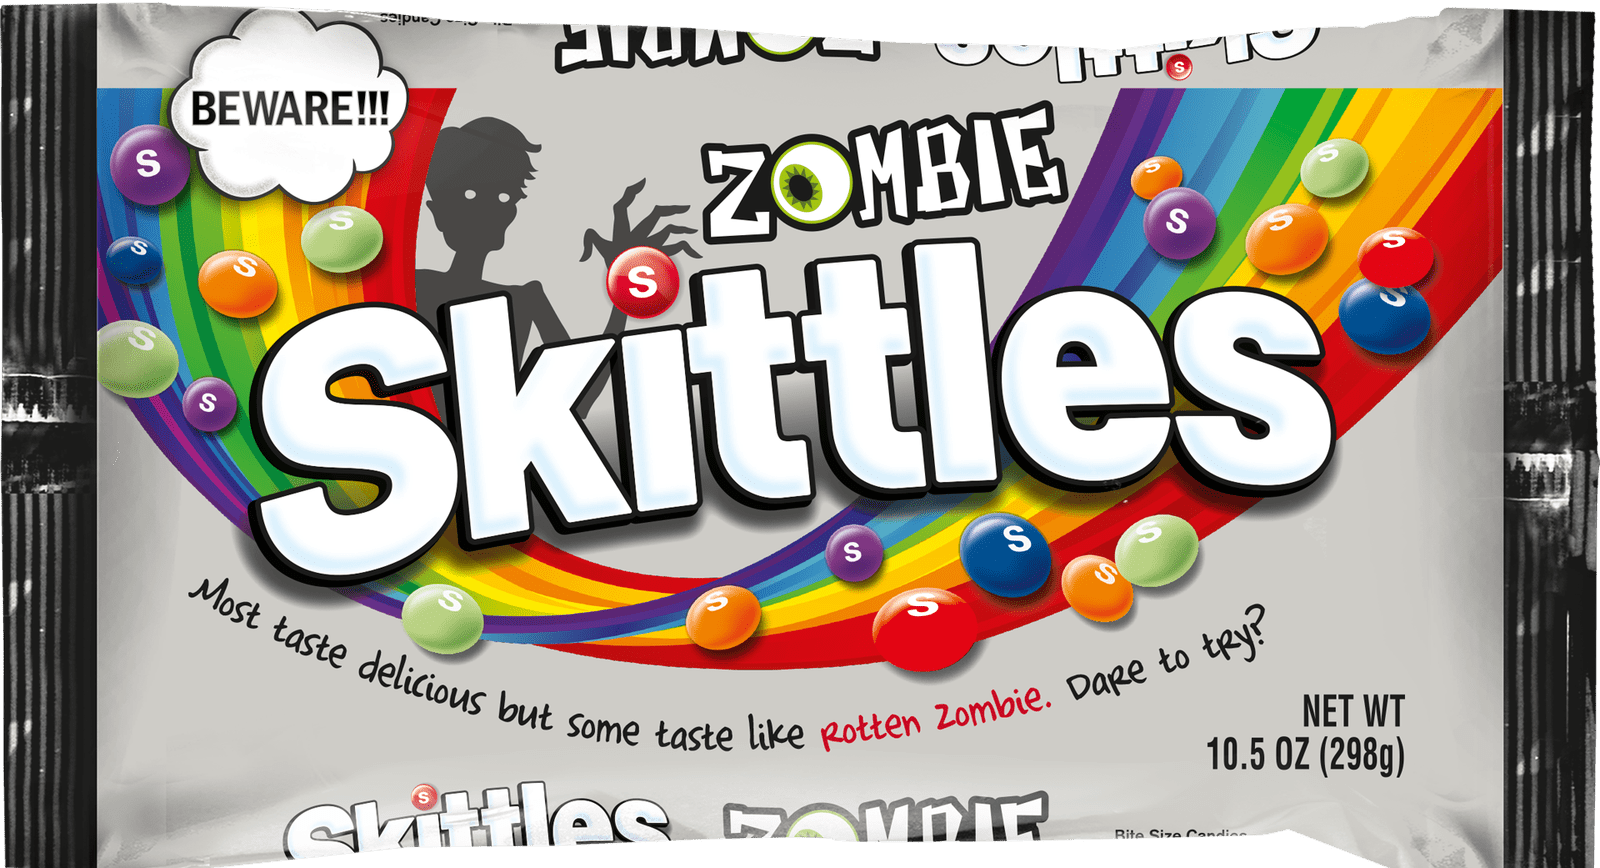 Flipboard: Skittles Is Releasing a "Rotten Zombie" Bag 